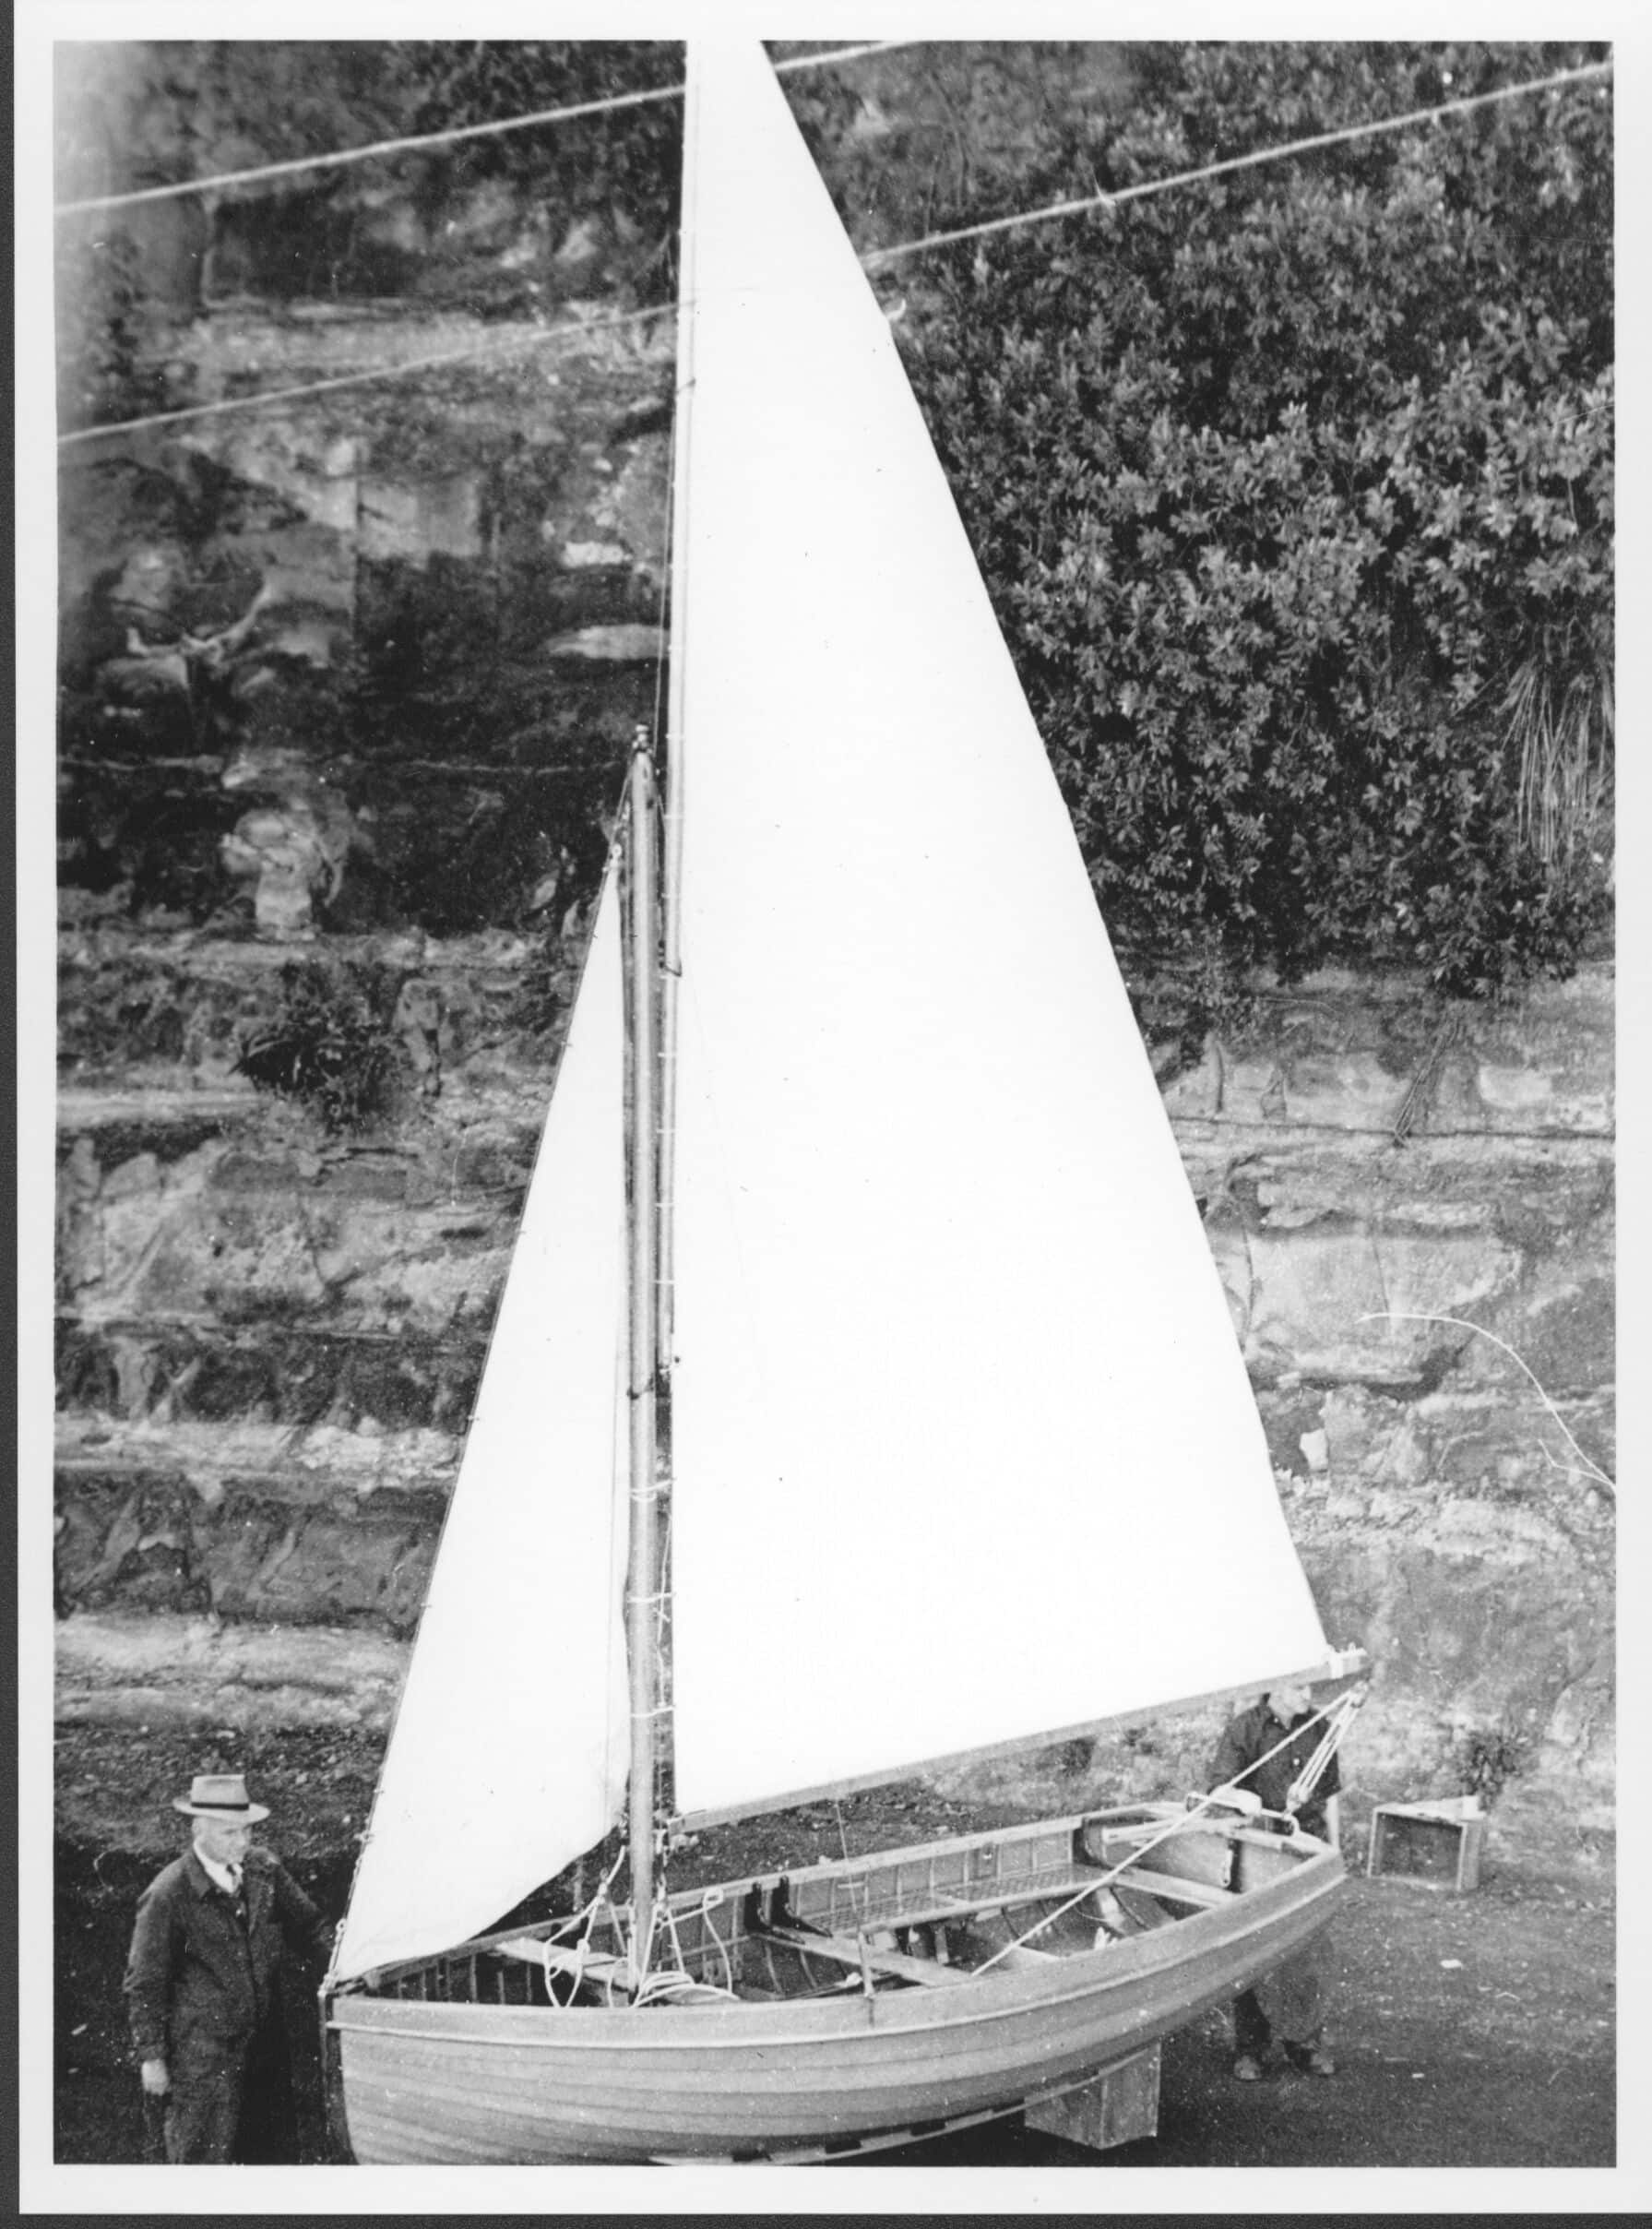 westphal one design sailboat